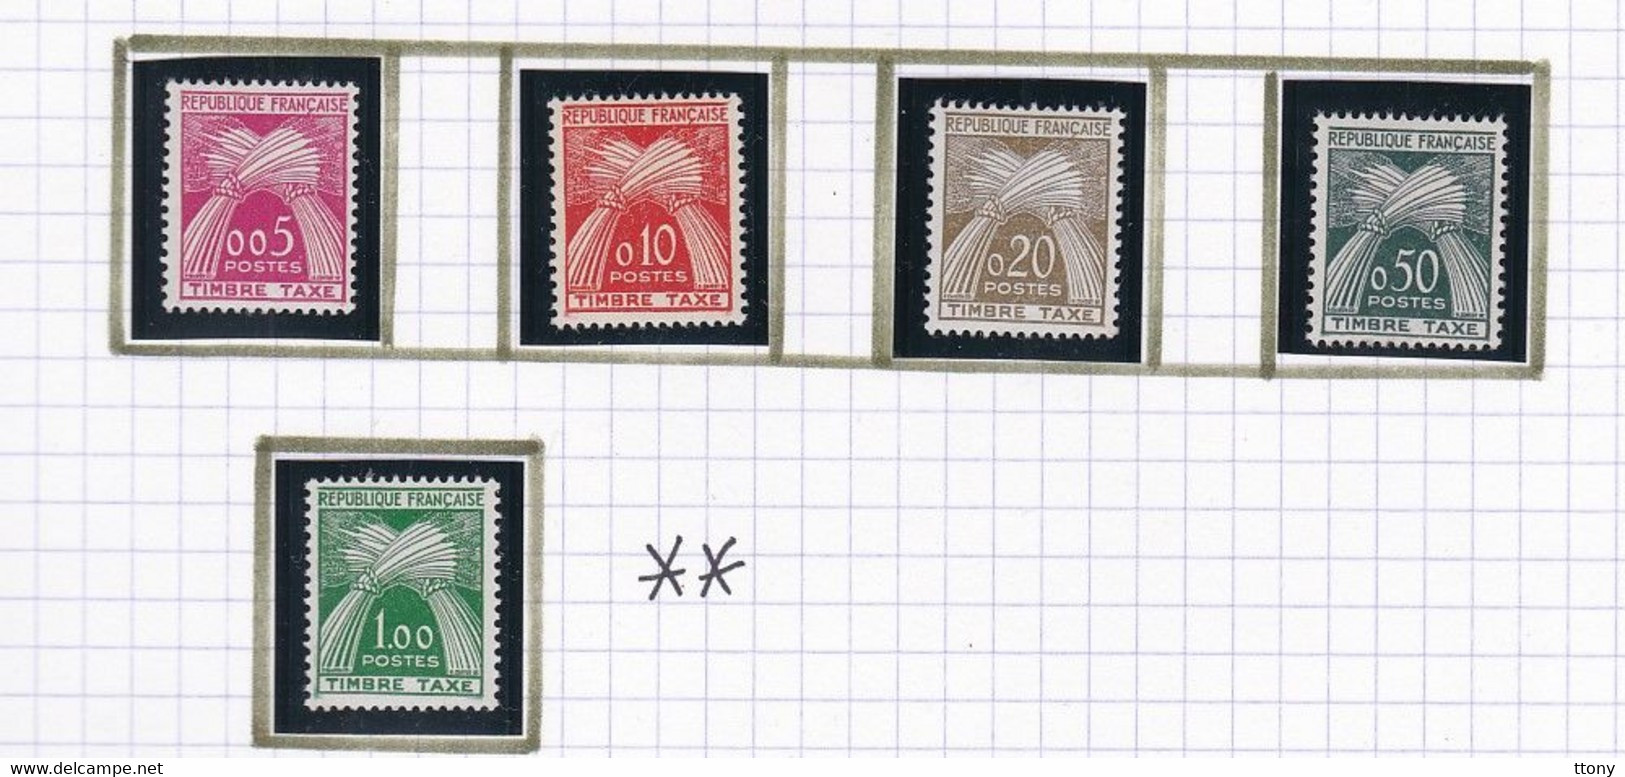 un ensemble de timbres taxes différentes années  timbres oblitérés et  quelques timbres neufs